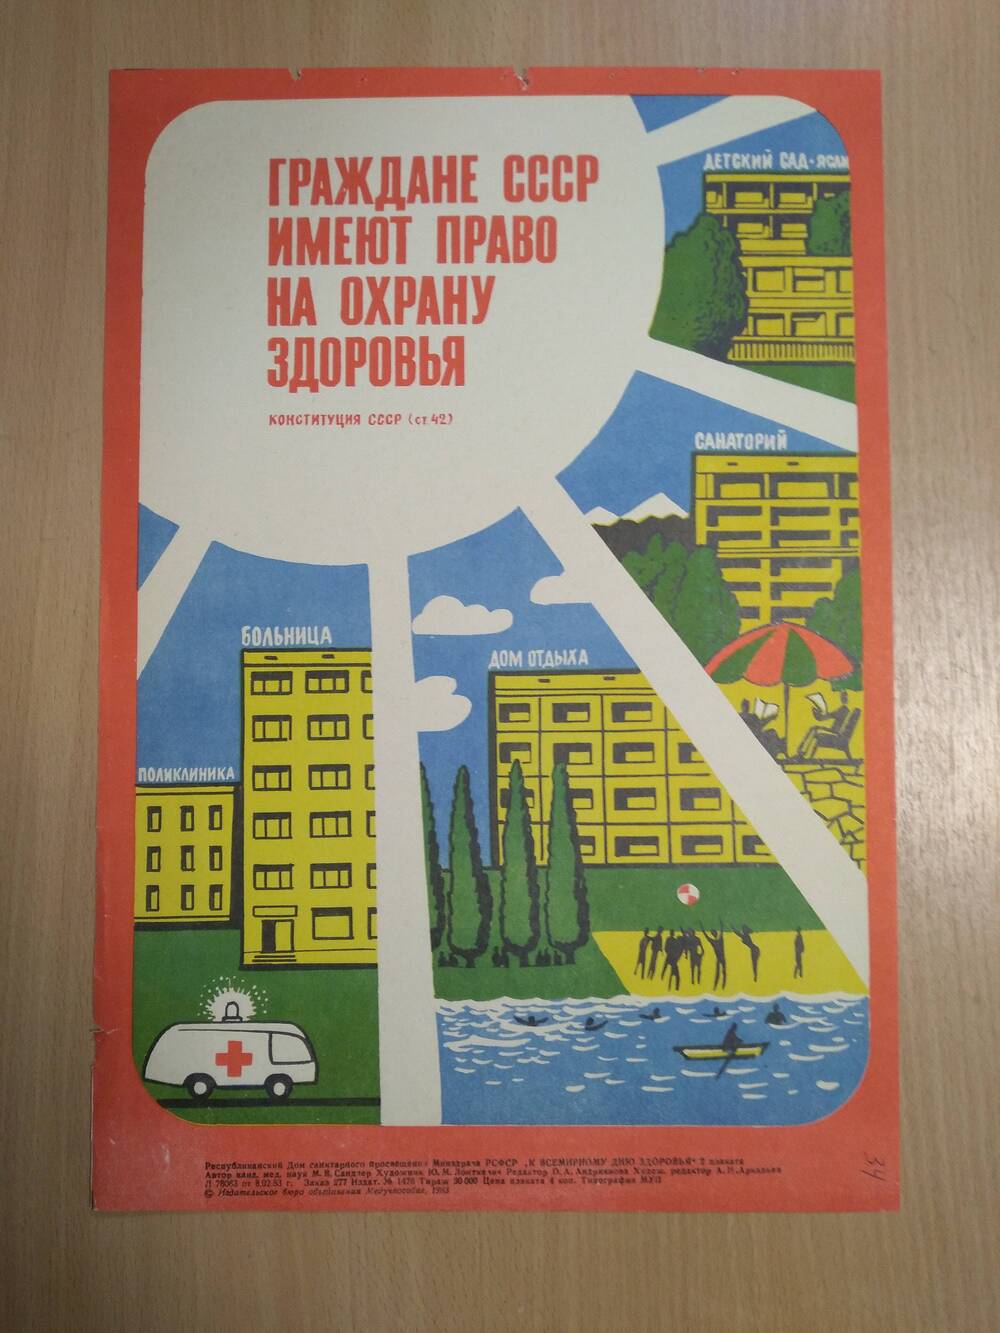 Плакат Граждане СССР имеют право на охрану здоровья